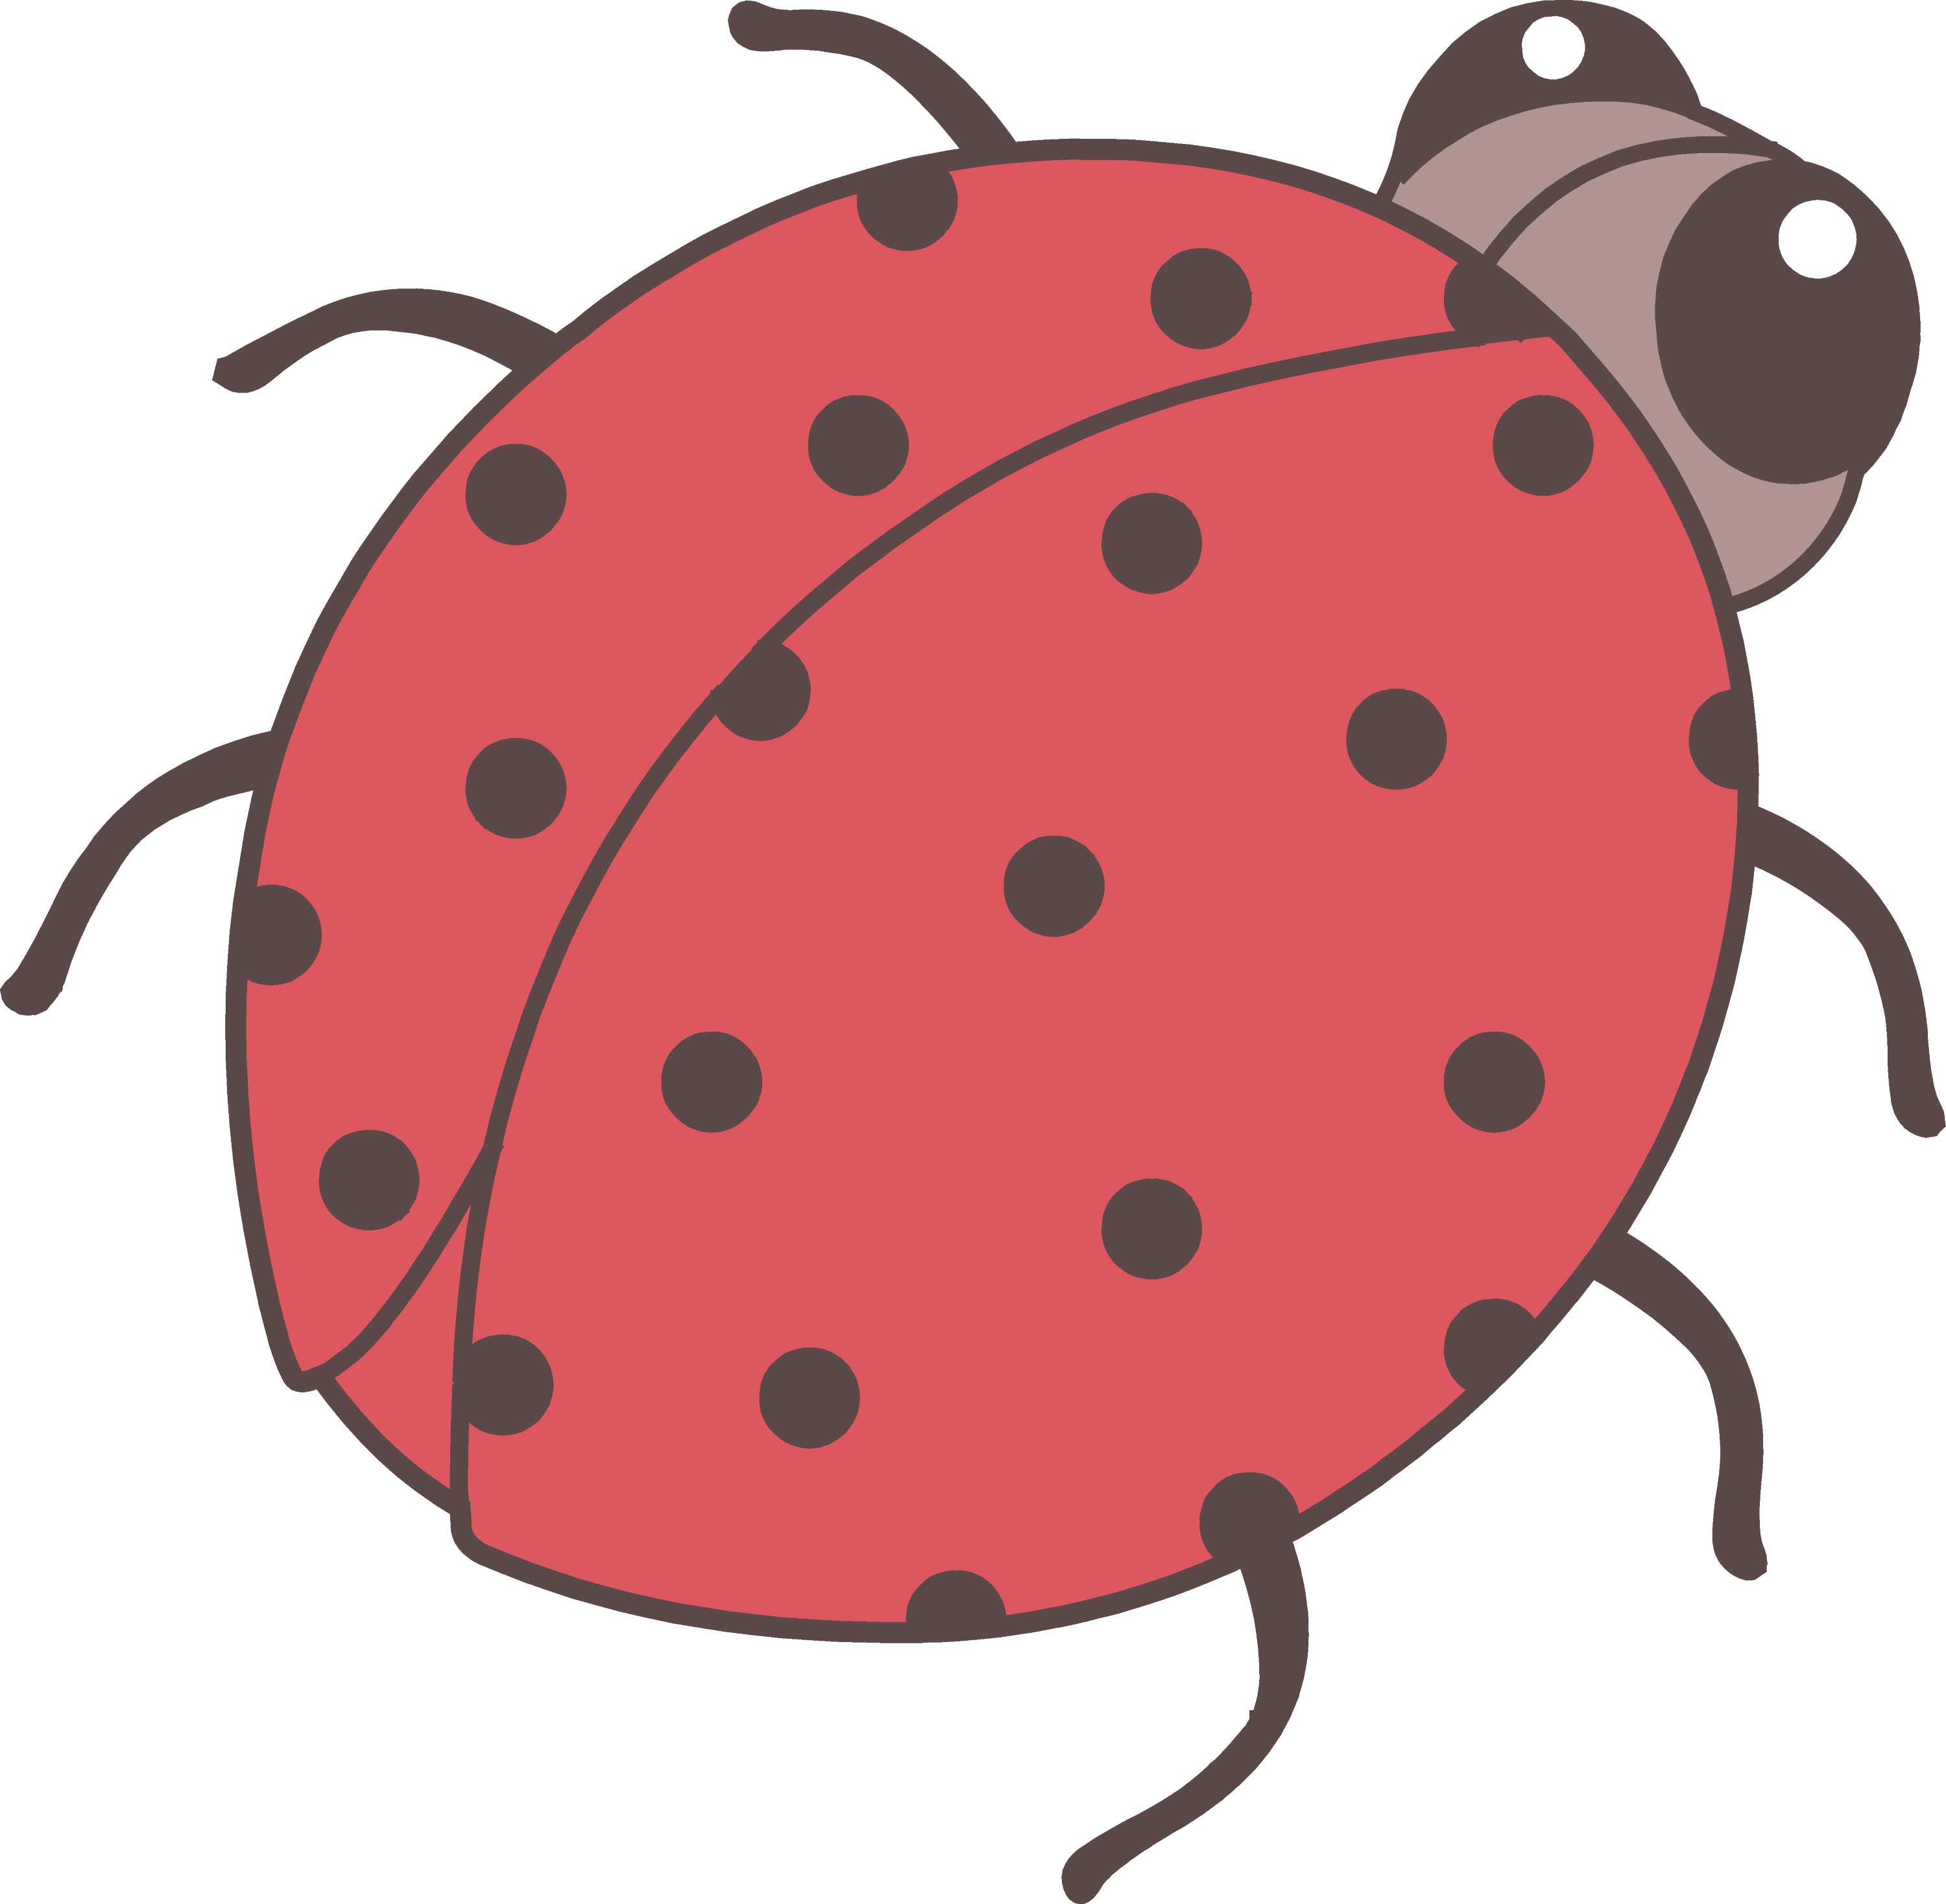 ladybug images clip art - photo #49